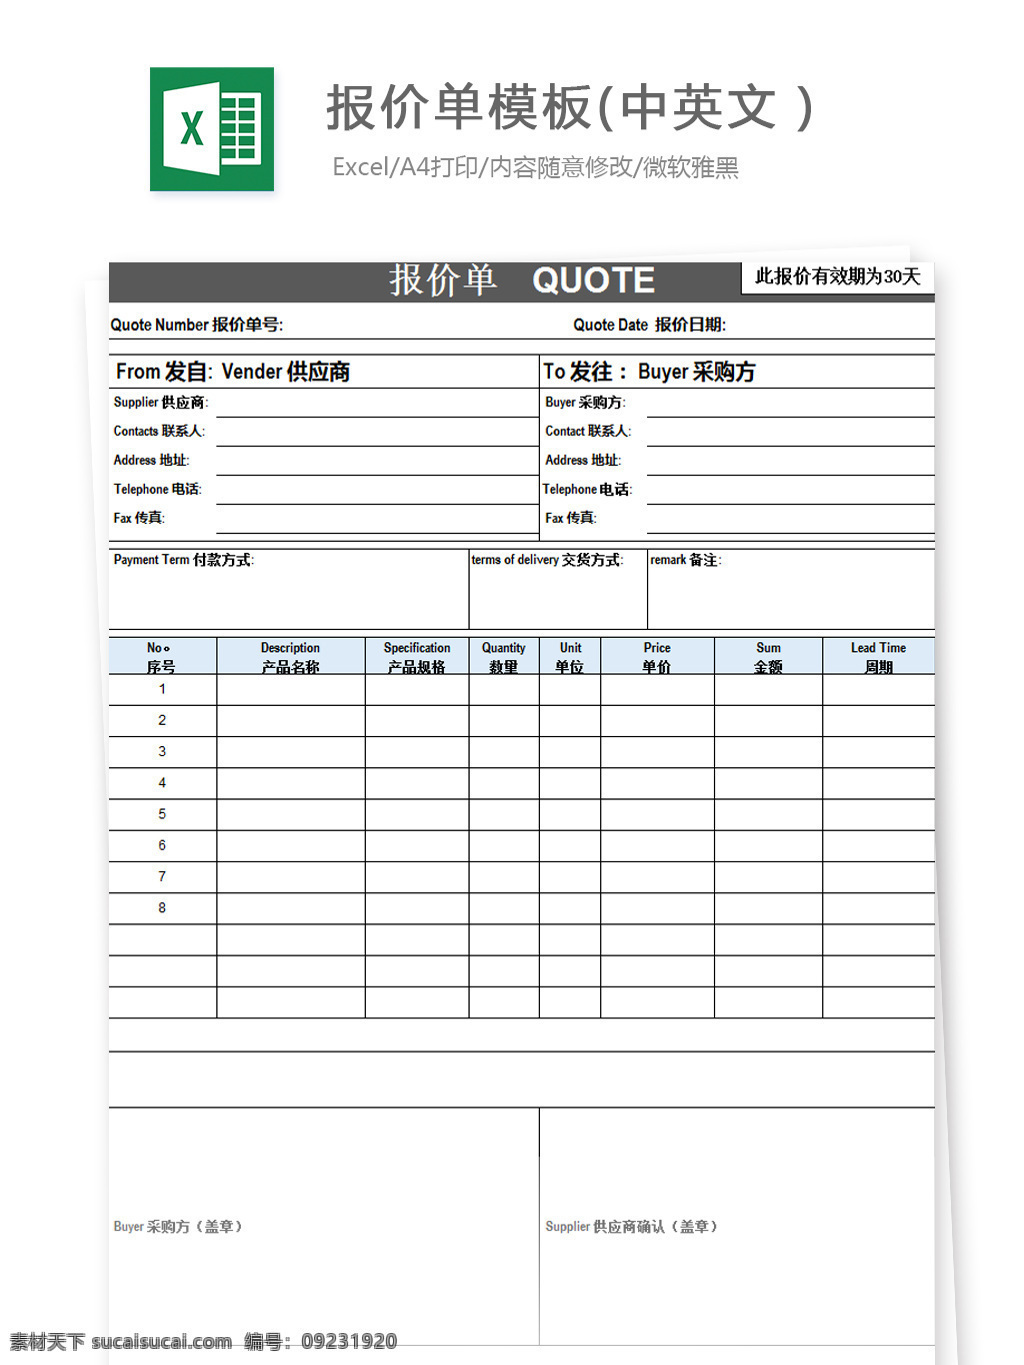 报价单 模板 中英文 excel 图表 图表模板 文档 表格 表格模板 自动变换 表格设计 报价单模板